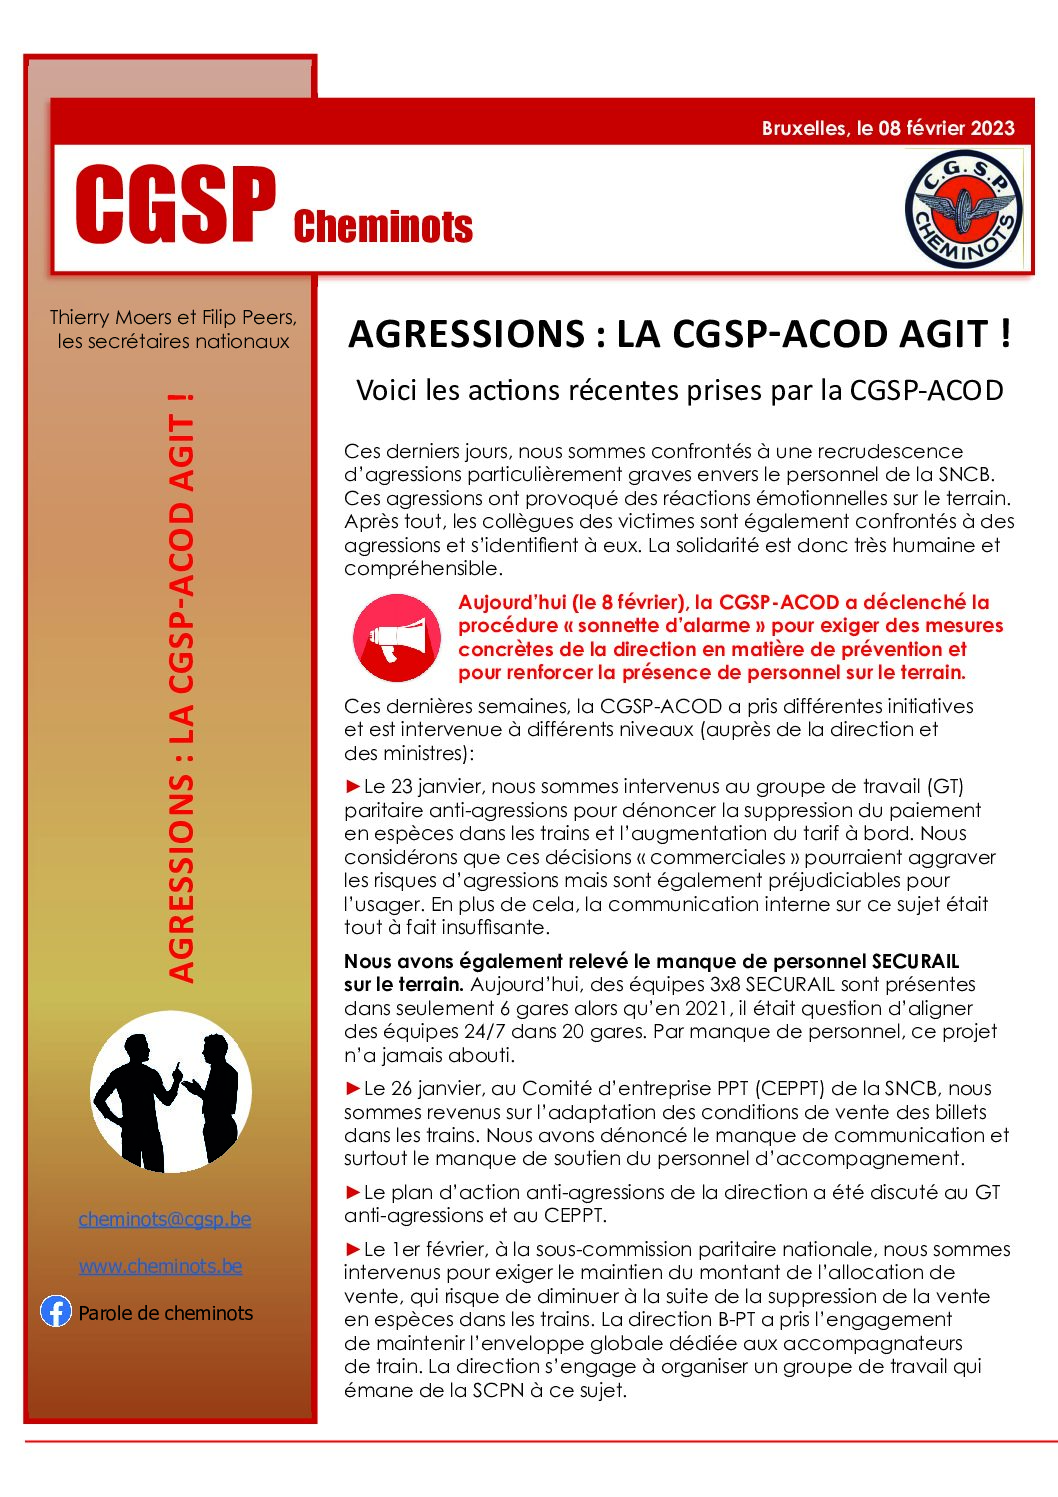 AGRESSIONS : LA CGSP-ACOD AGIT !